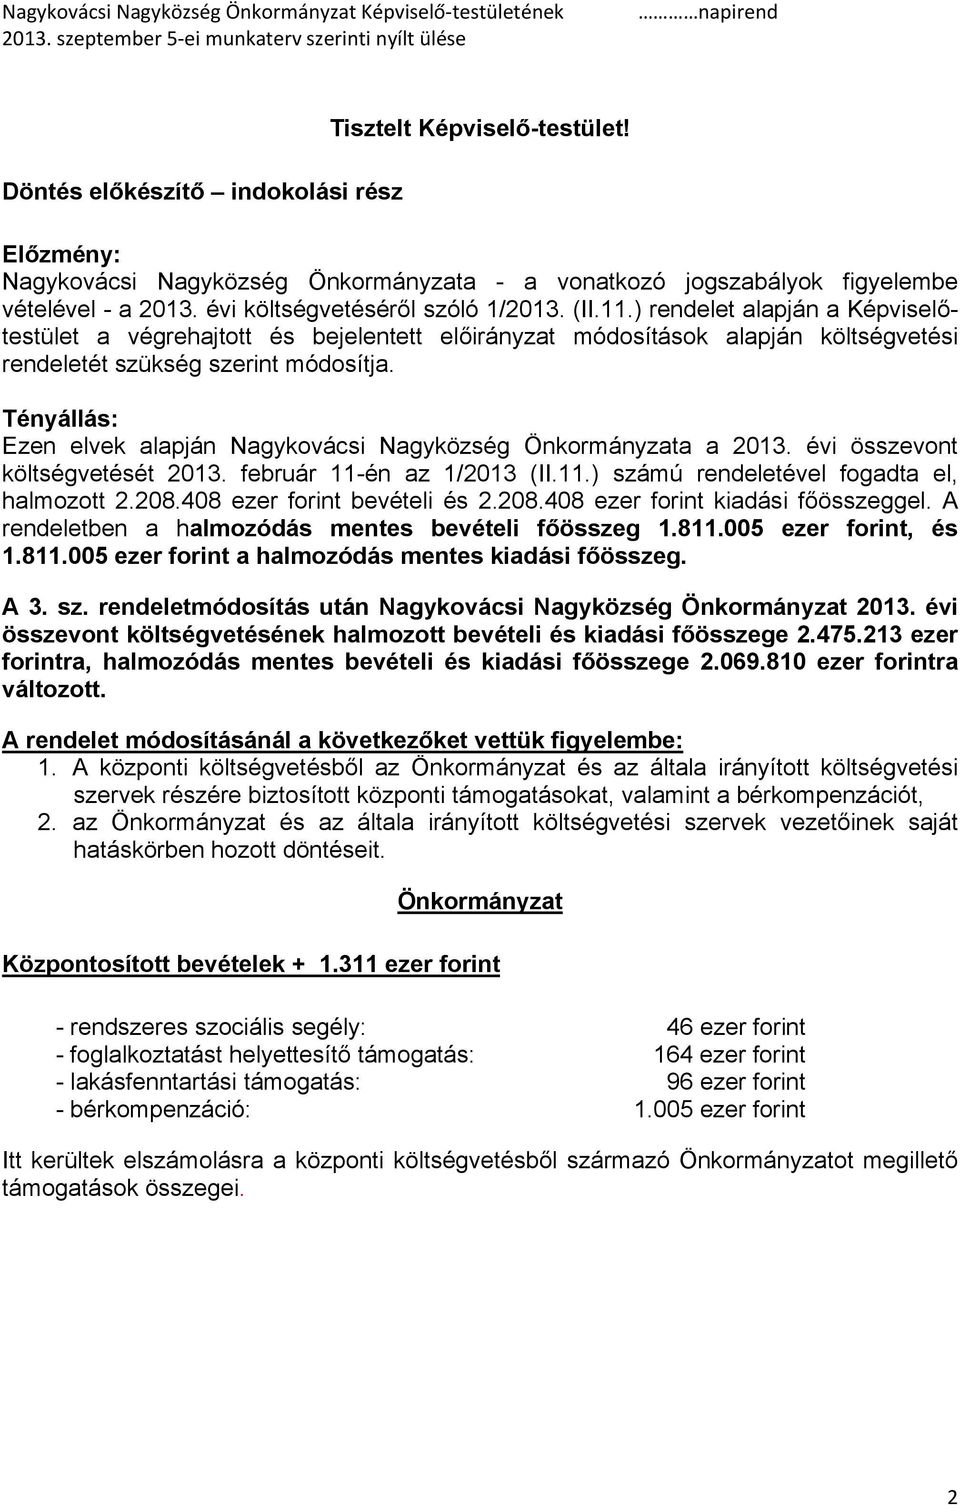 Tényállás: Ezen elvek alapján Nagykovácsi Nagyközség Önkormányzata a 2013. évi összevont költségvetését 2013. február 11-én az 1/2013 (II.11.) számú rendeletével fogadta el, halmozott 2.208.